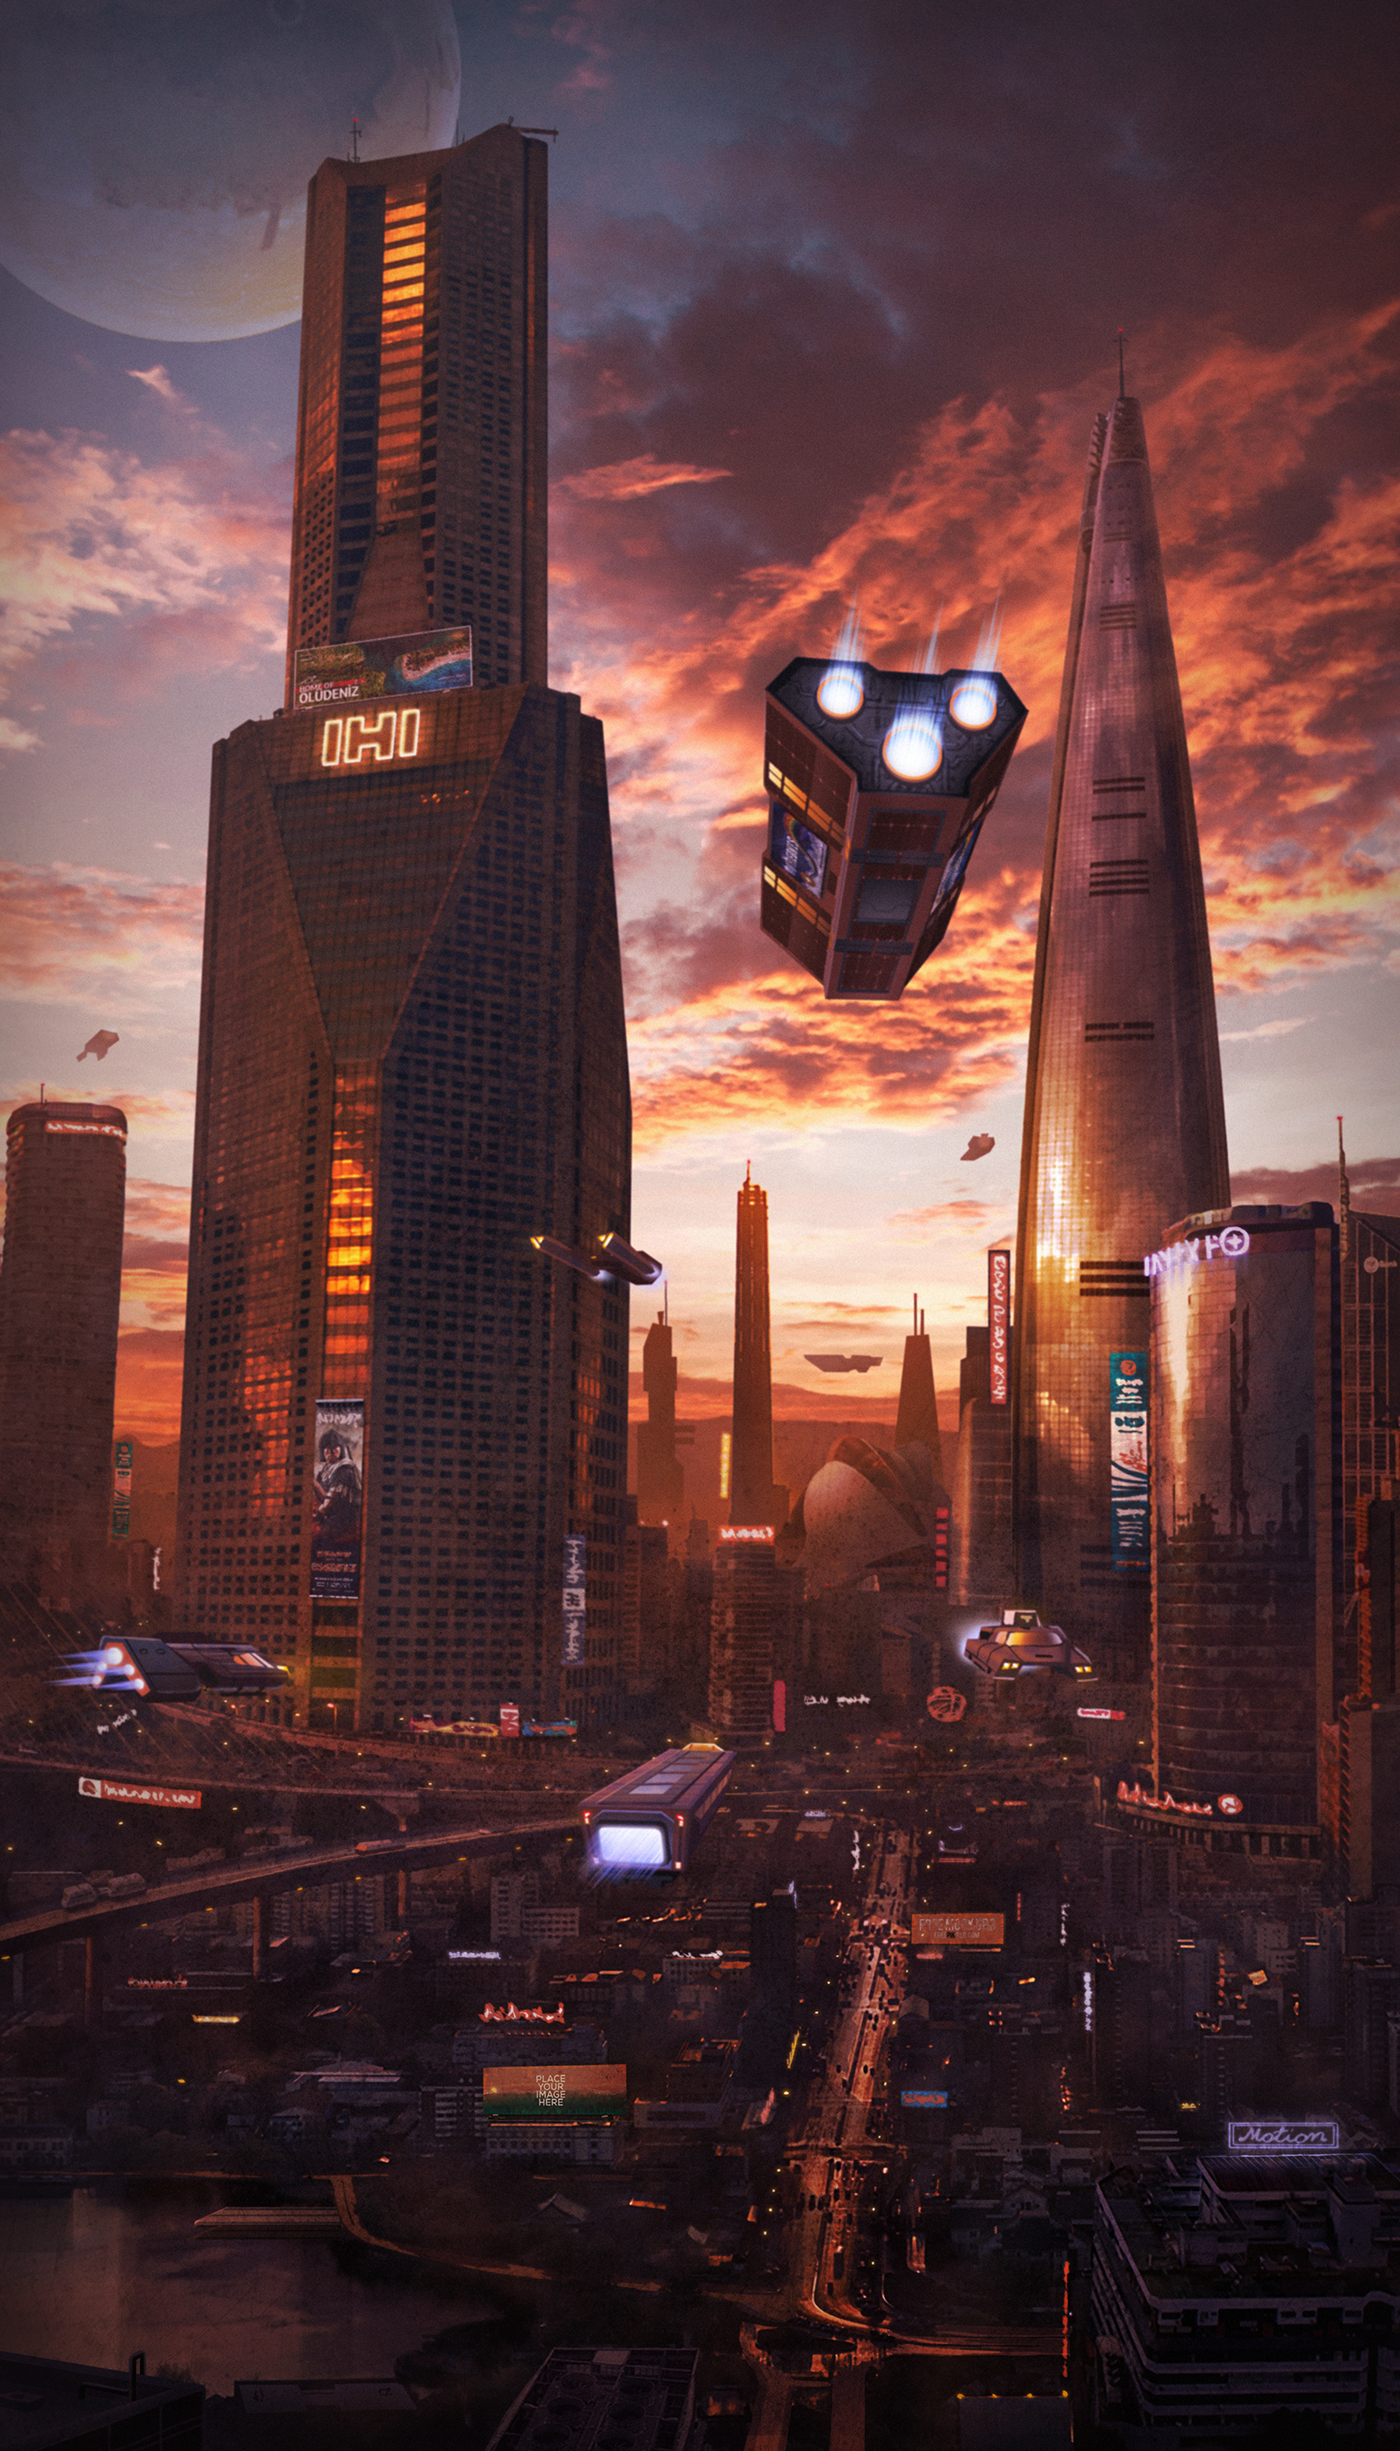 sci-fi planet future city environment concept skyscraper sunset